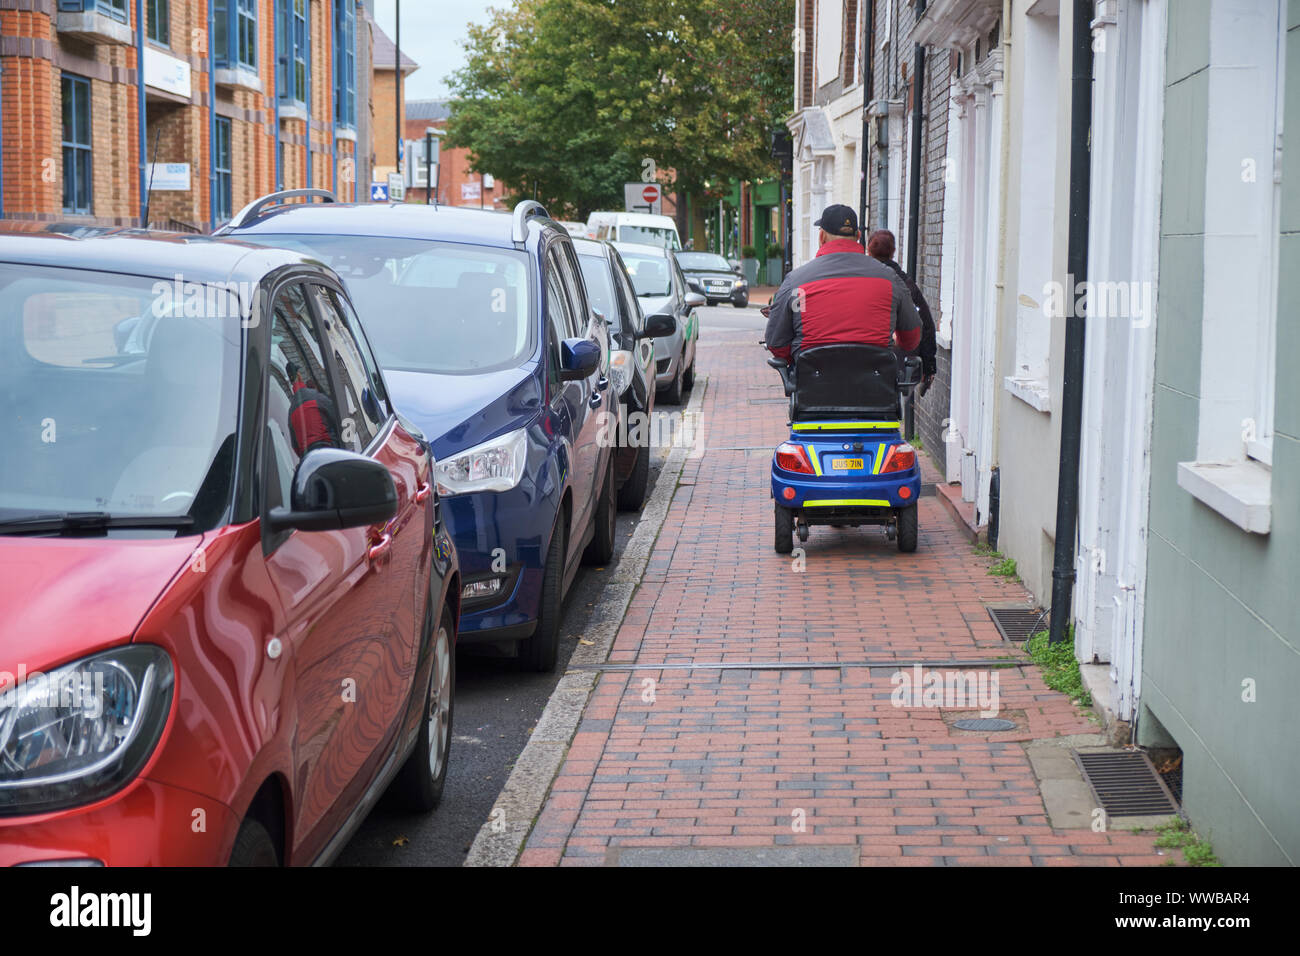 Personne à mobilité réduite scooter électrique sur le trottoir étroit d'être ralenti par un piéton en face. Lewes, Royaume-Uni, Septembre 2019 Banque D'Images